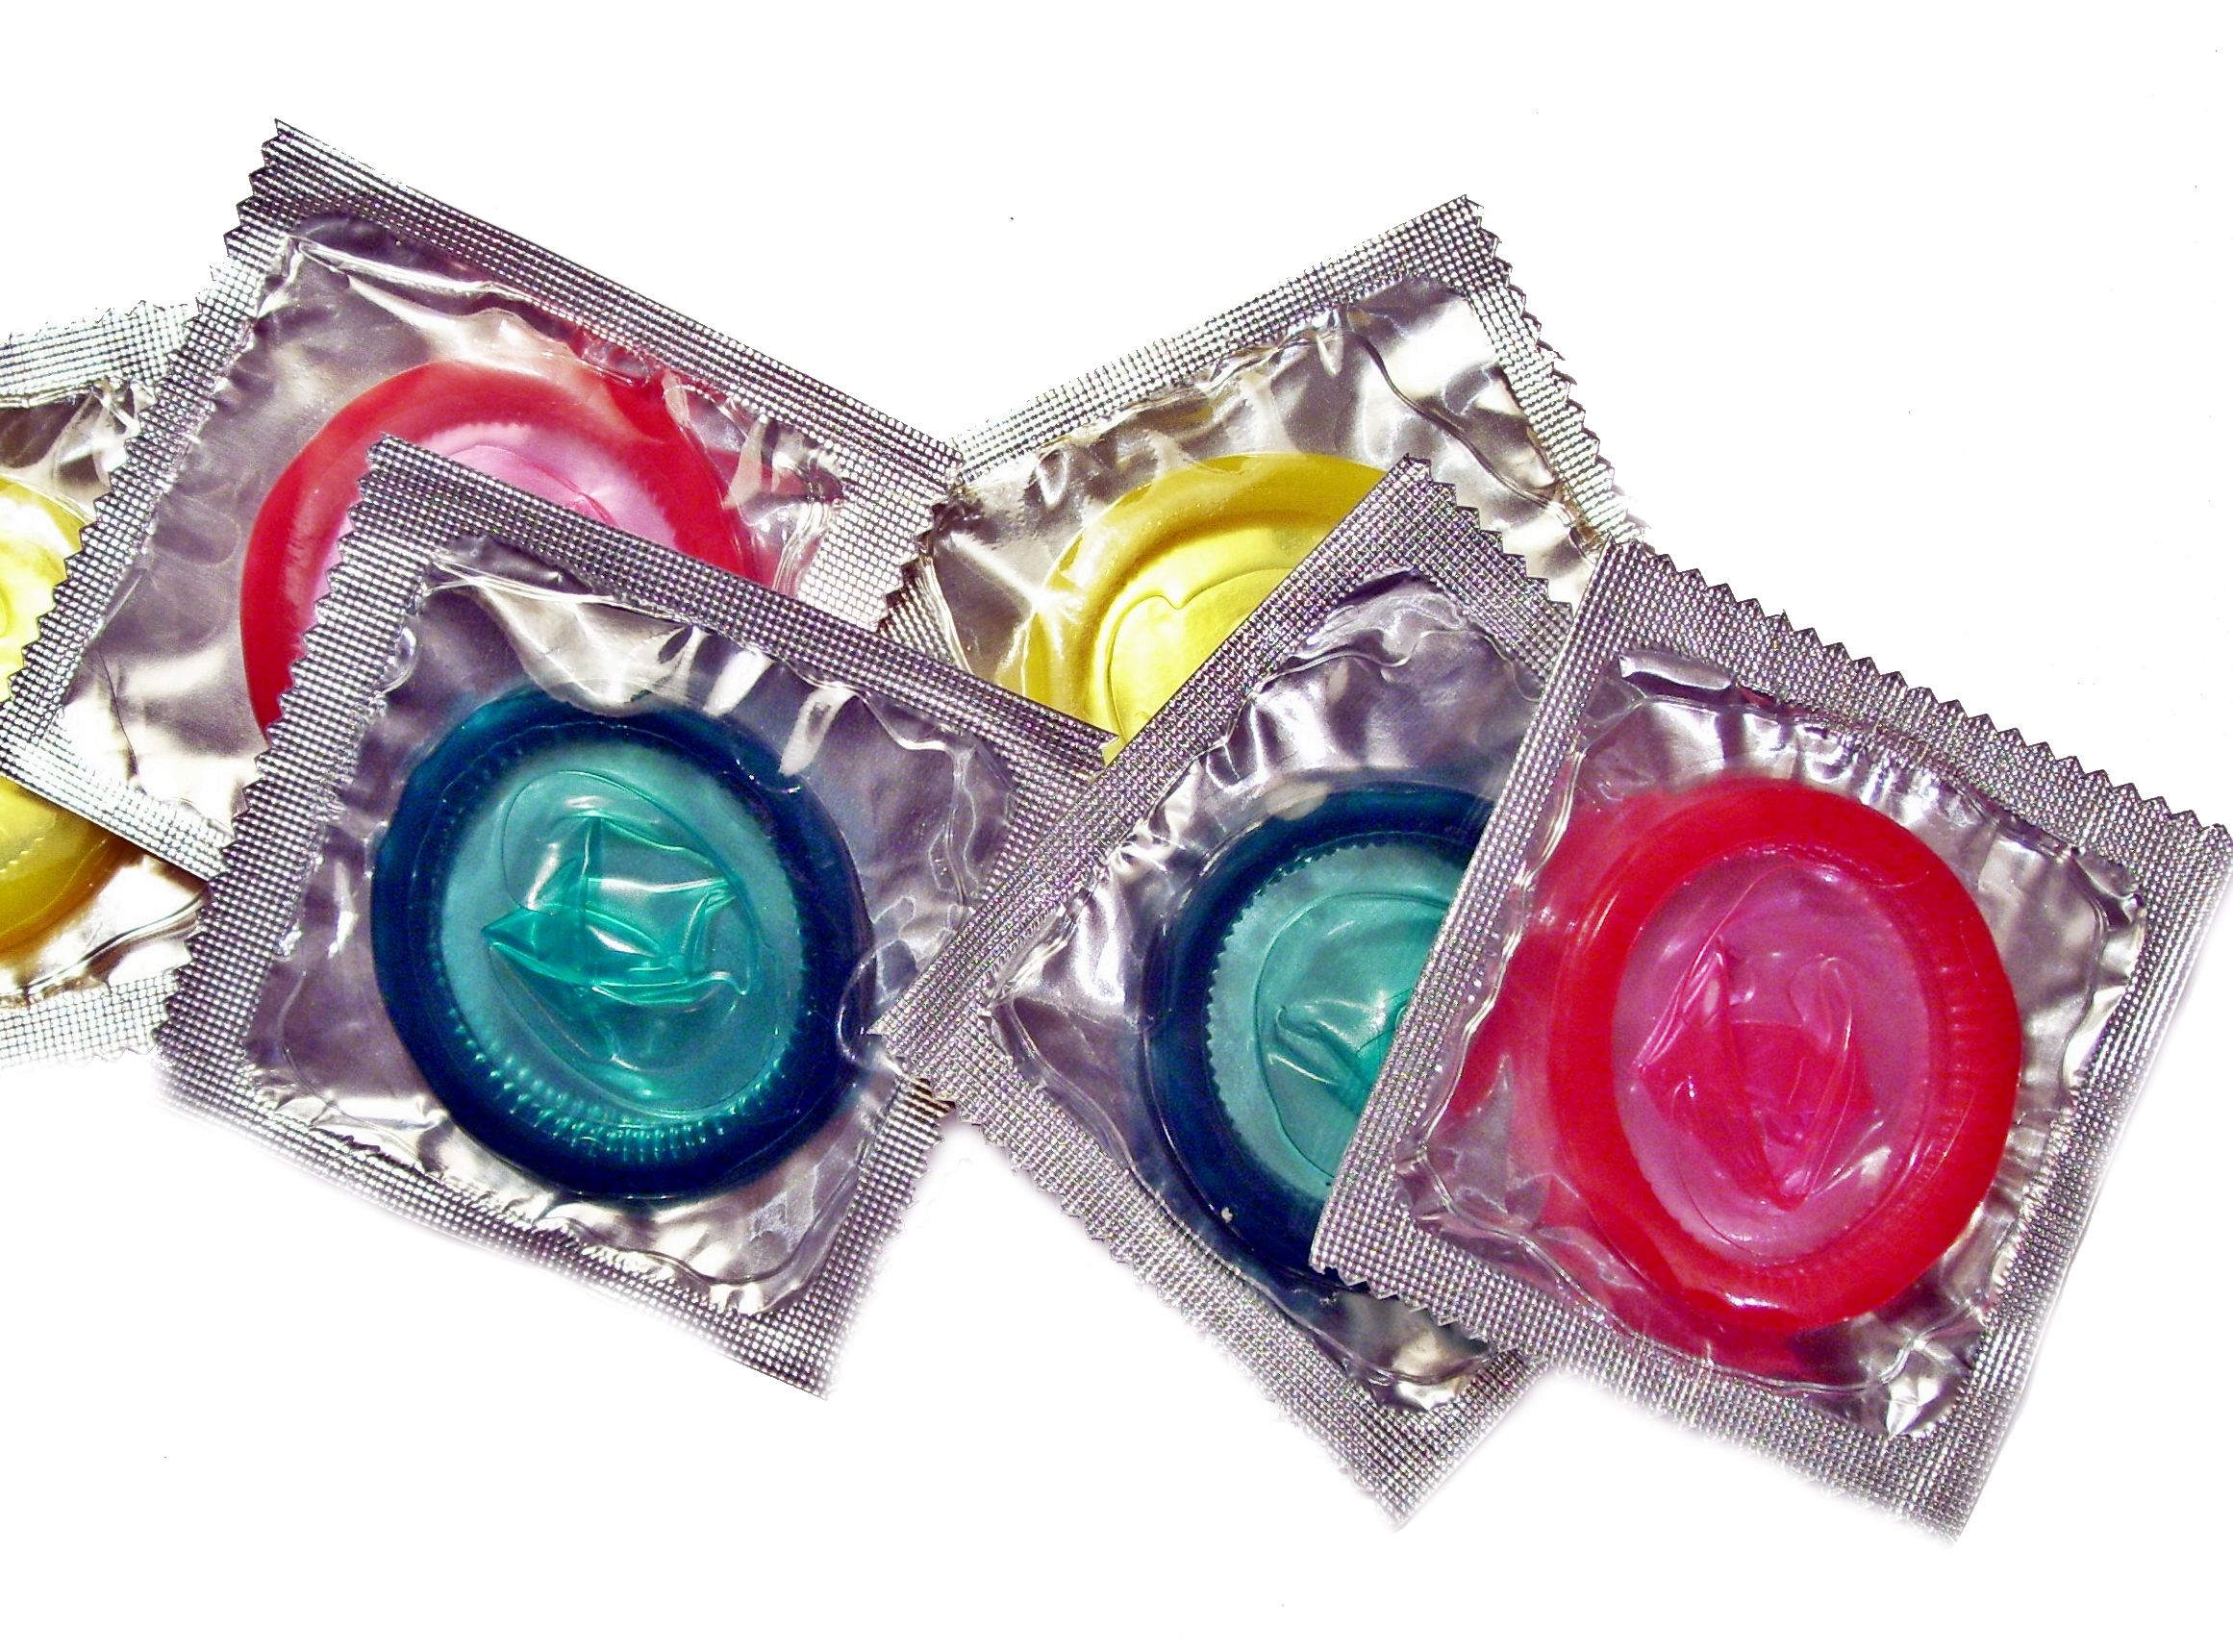 prezerwatywa-dobrze-dopasowana-gwarantuje-zdrowy-seks-dziennik-pl